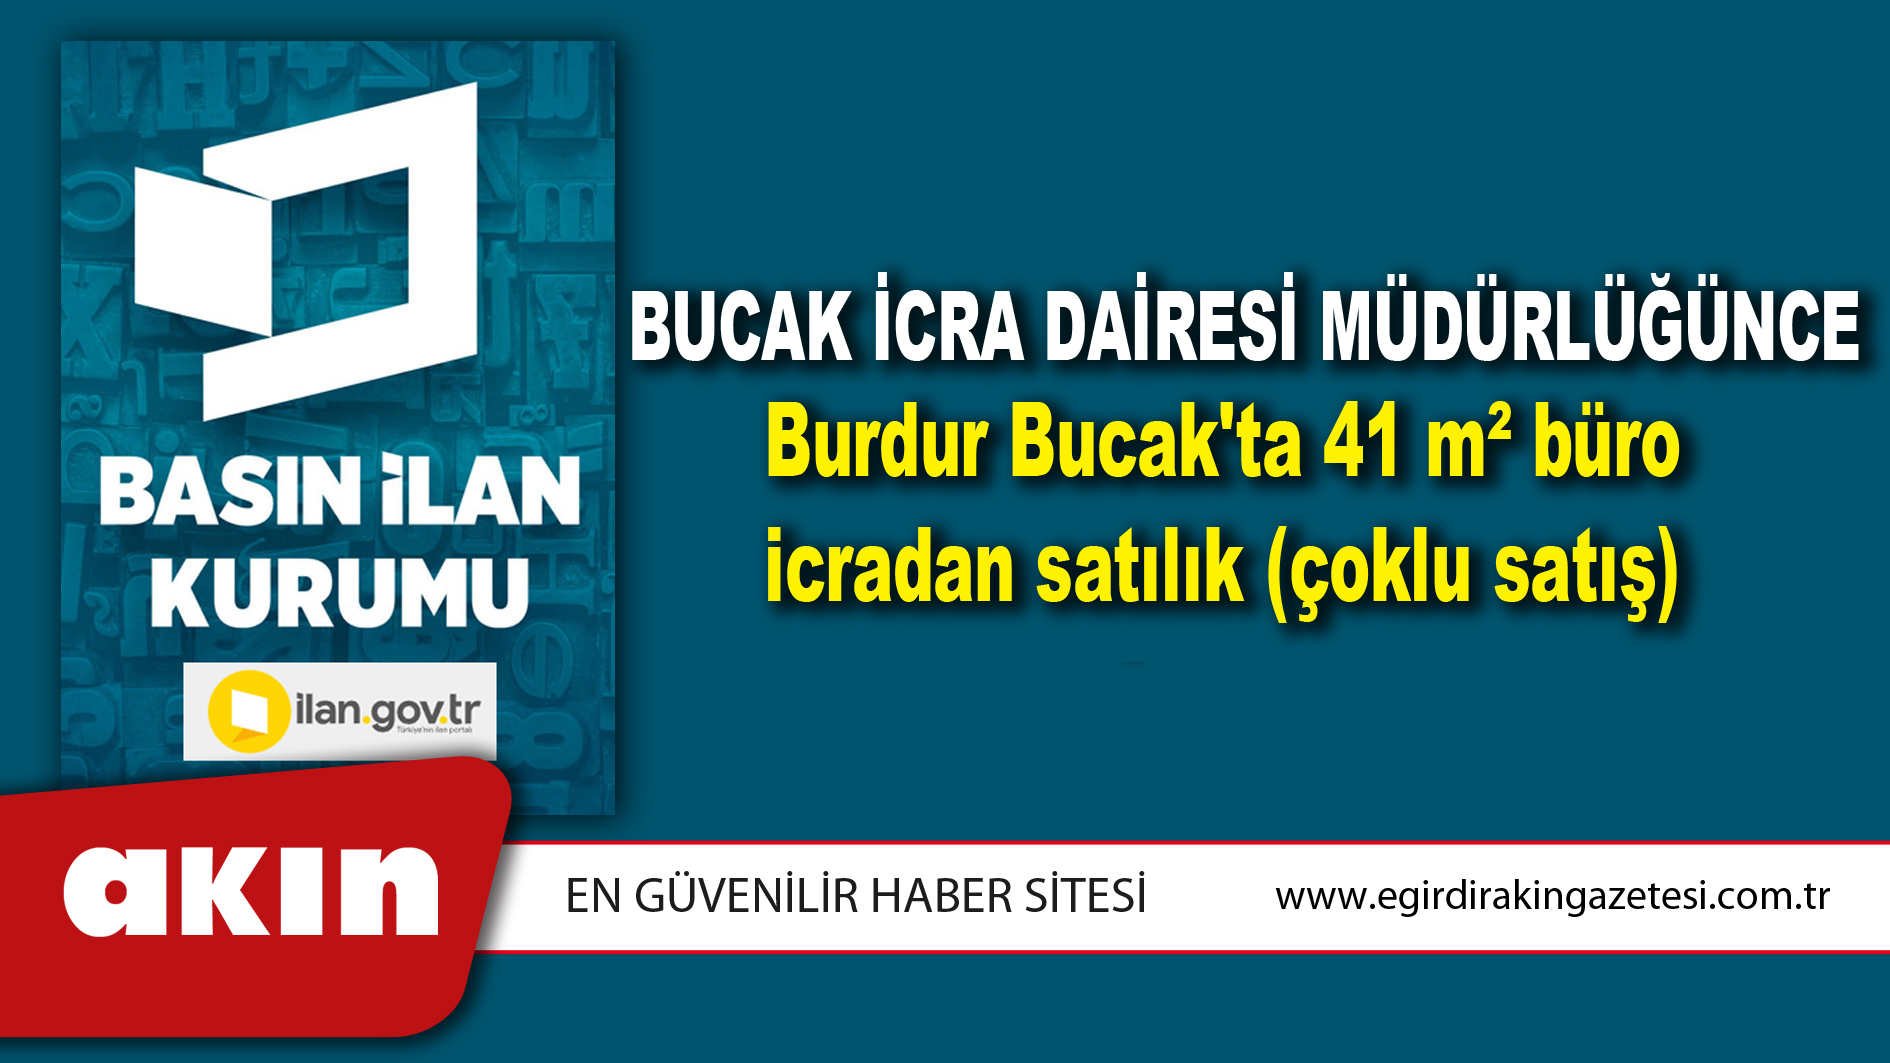 Bucak İcra Dairesi Müdürlüğünce Burdur Bucak'ta 41 m² büro icradan satılık (çoklu satış)